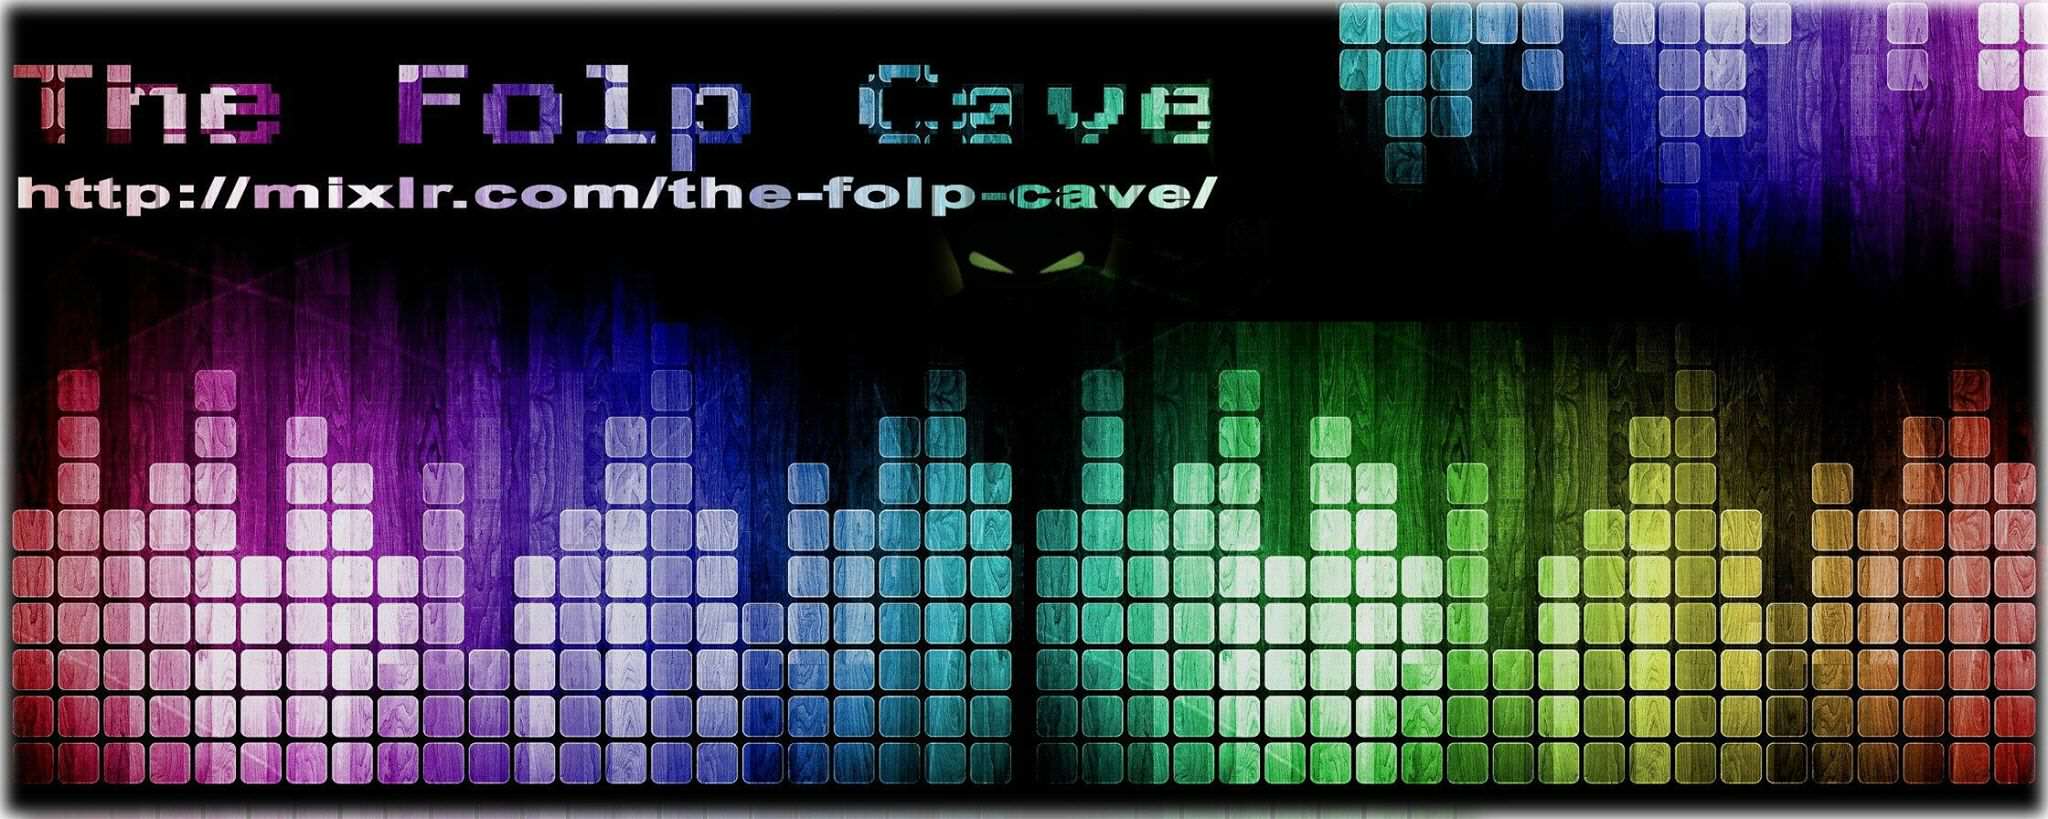 Novi obalni spletni radio “The Folp Cave”